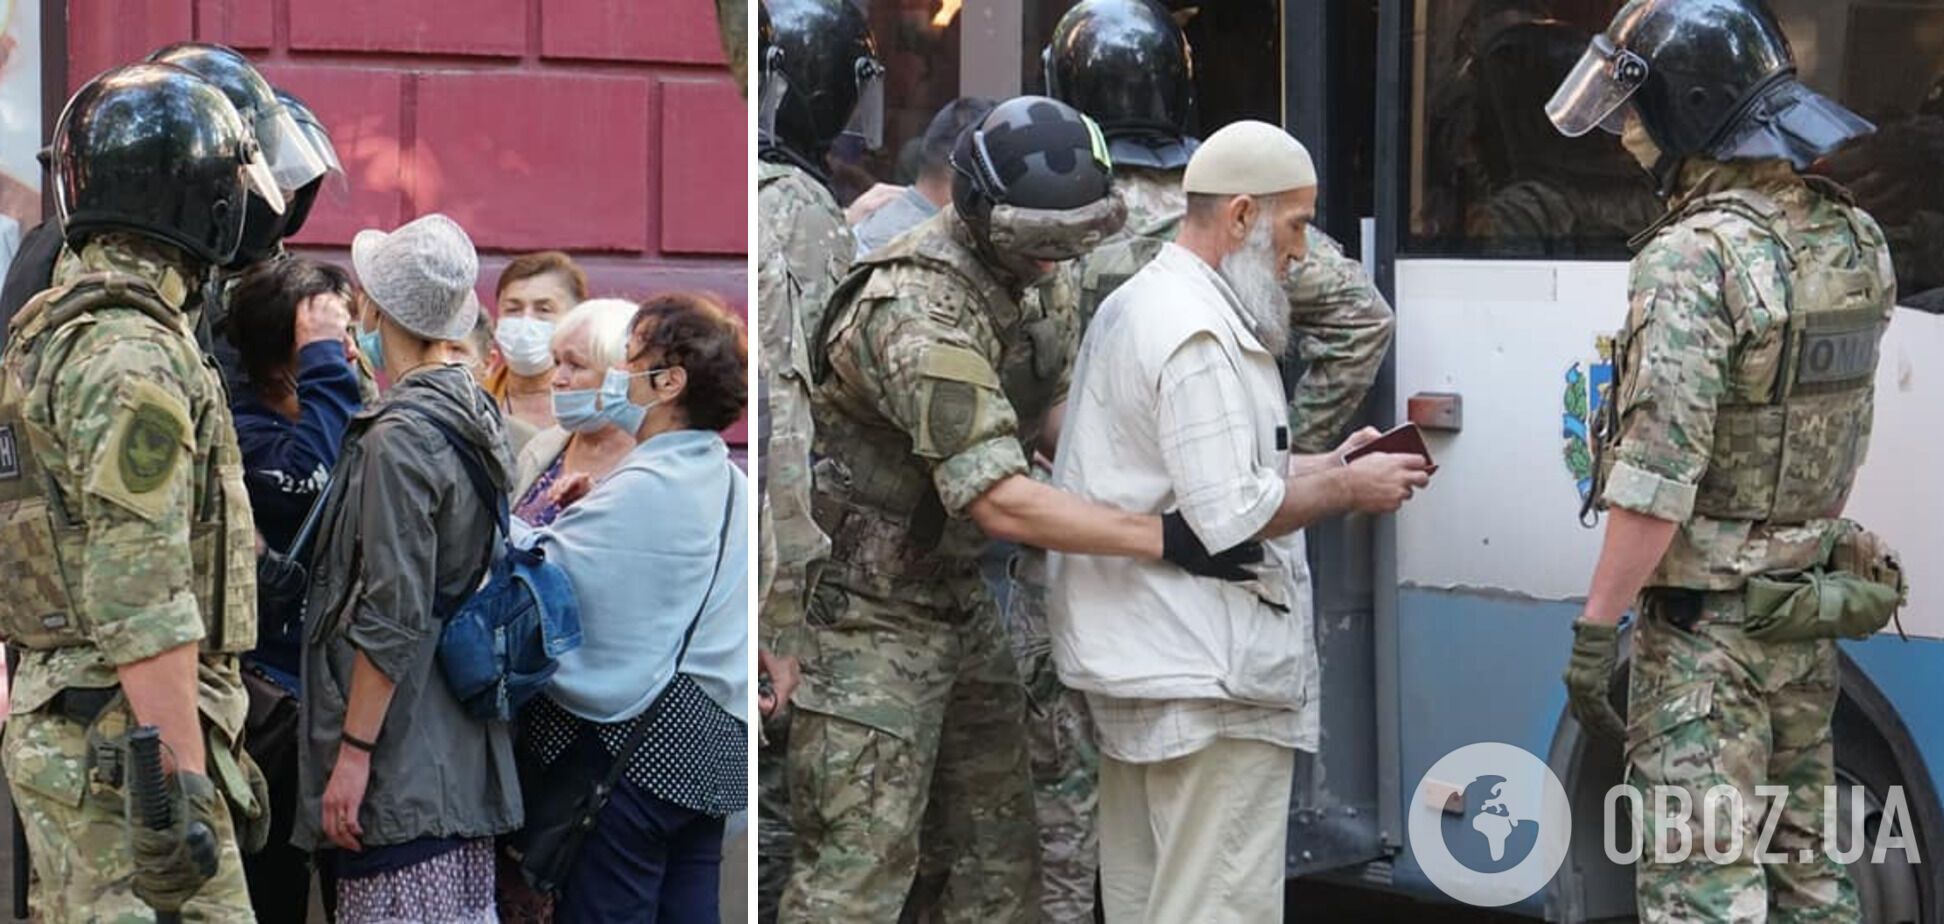 ФСБ провела задержания крымских татар в Крыму